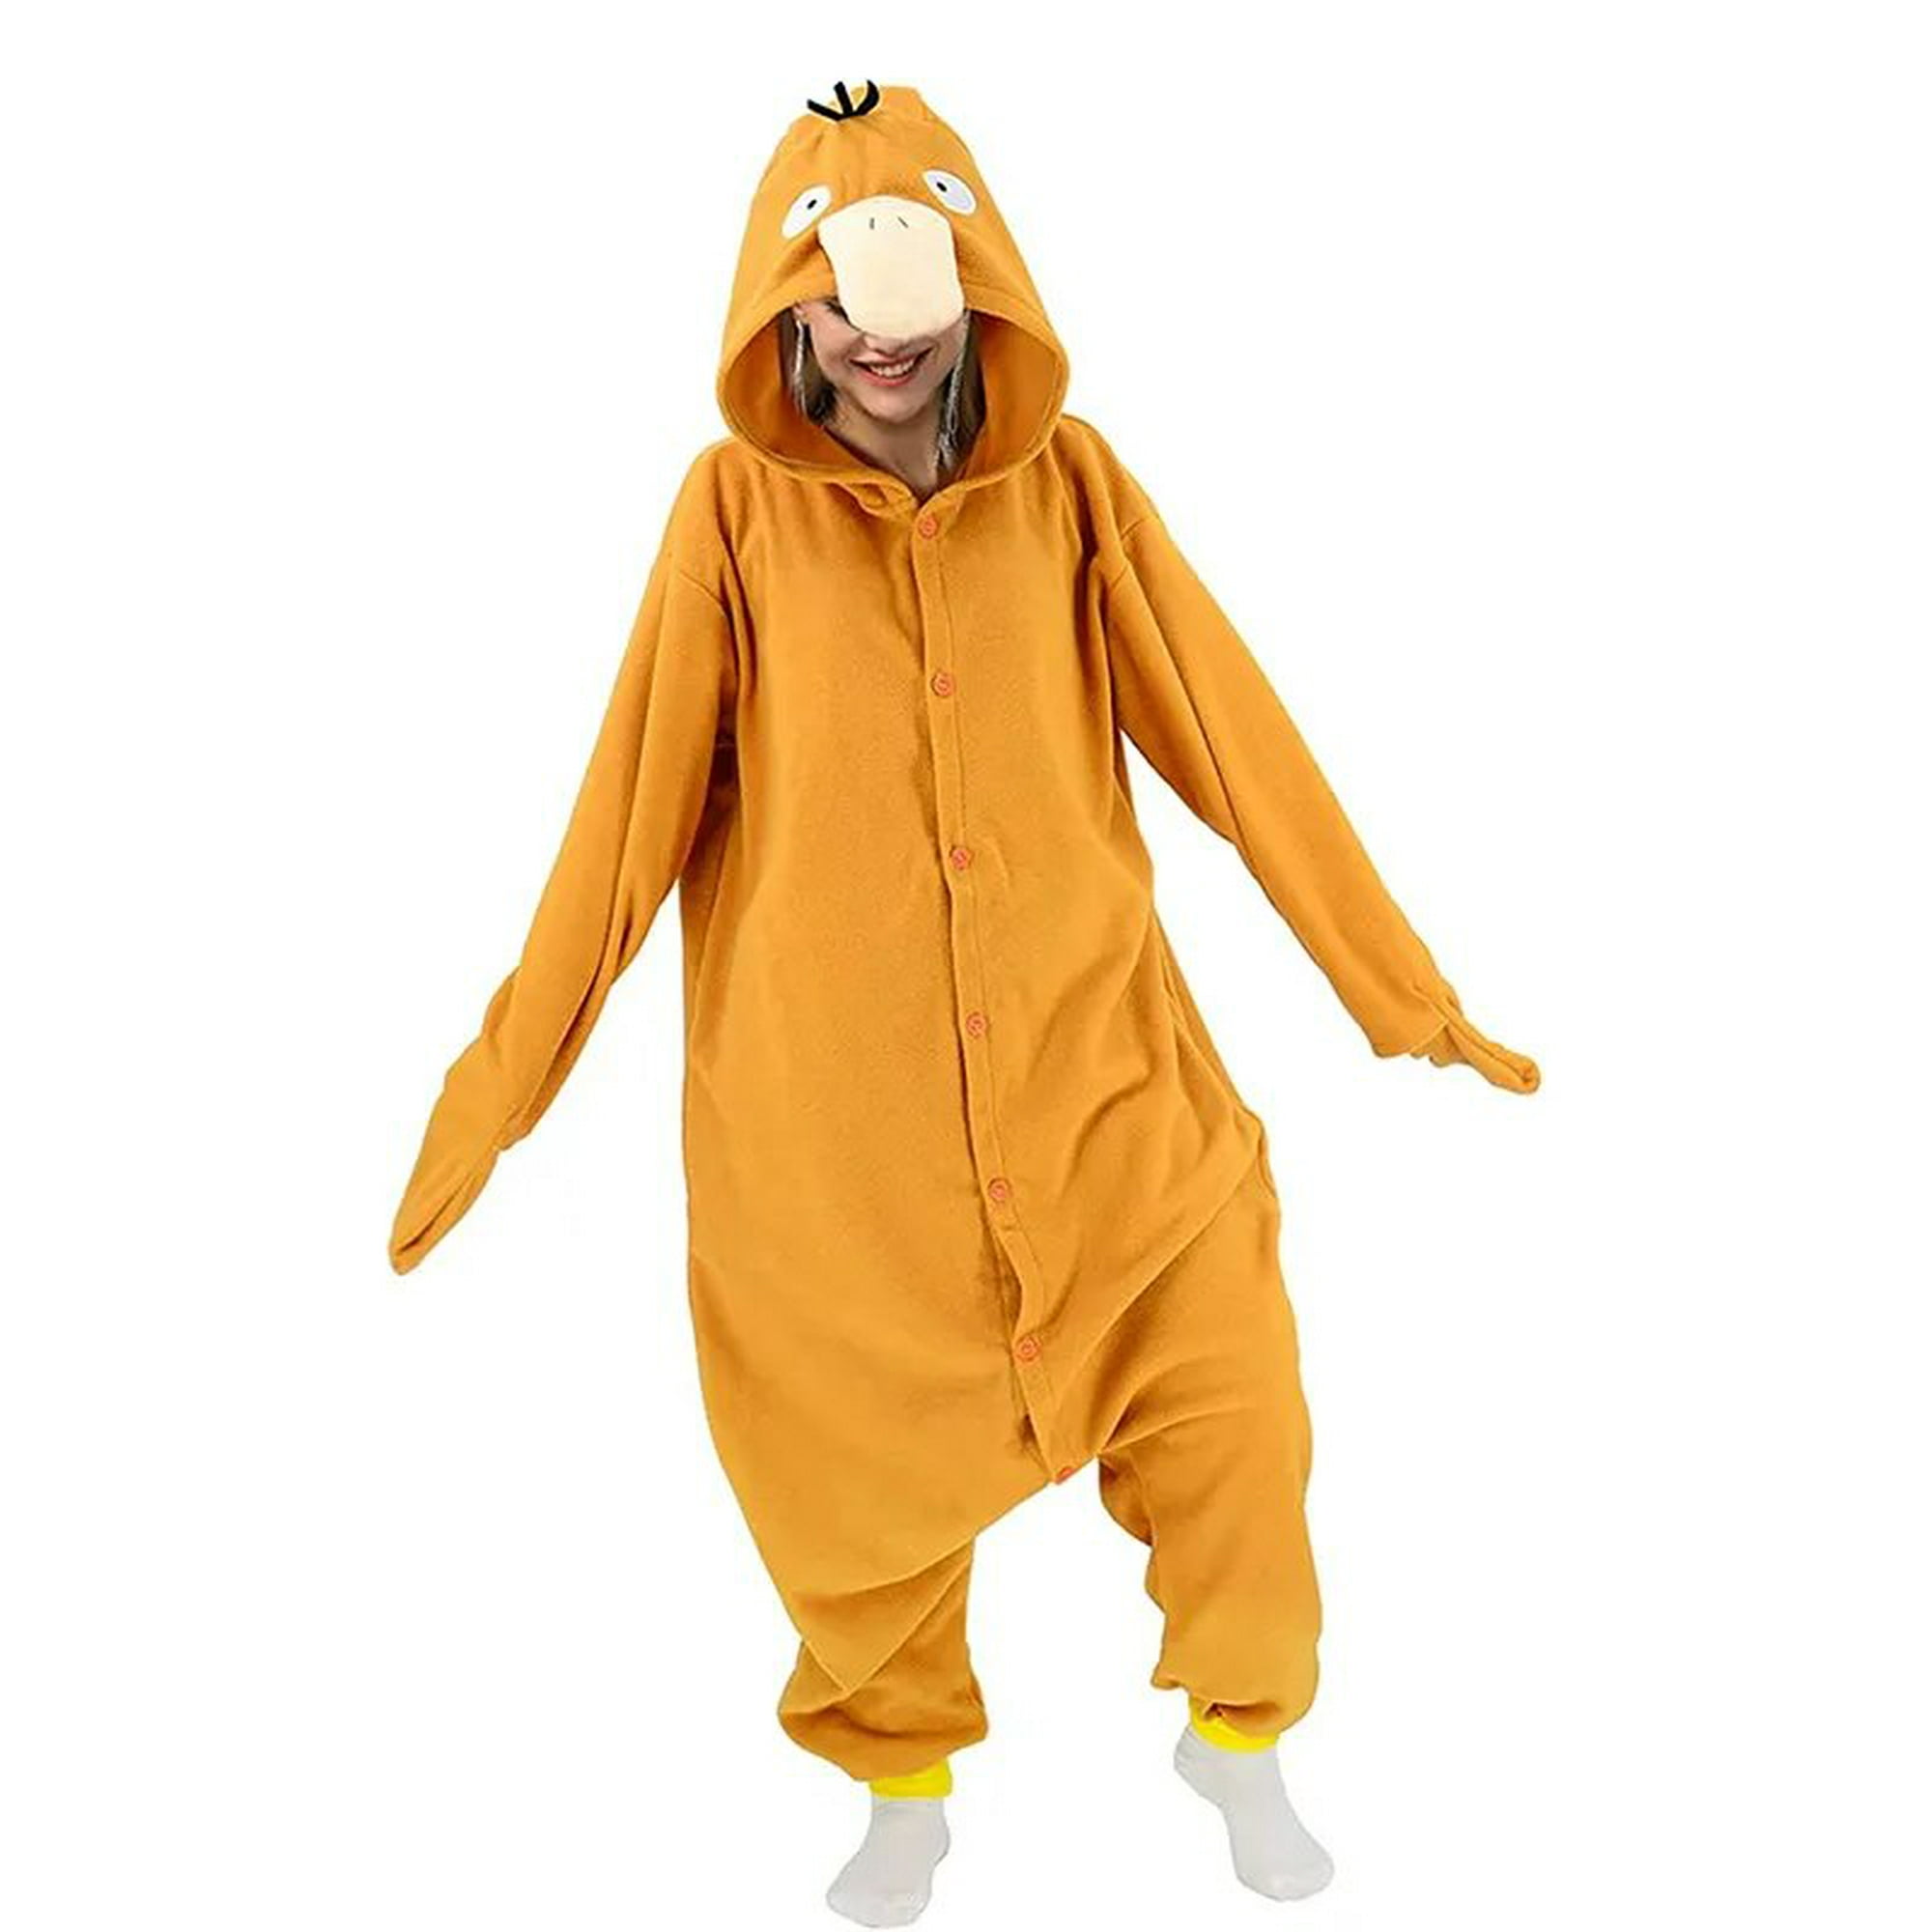 Bulbasaur-Pijama de Pokémon para Halloween y Navidad, traje de una